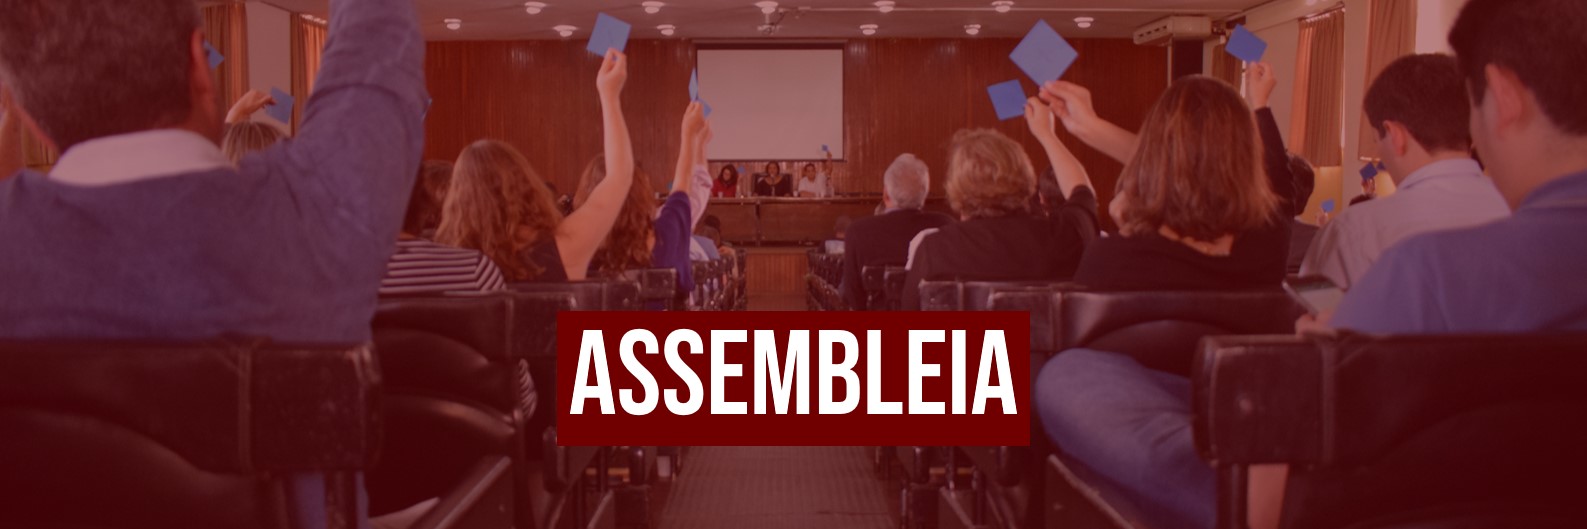 ASPUV convoca assembleia com indicação do Andes-SN sobre estado de greve